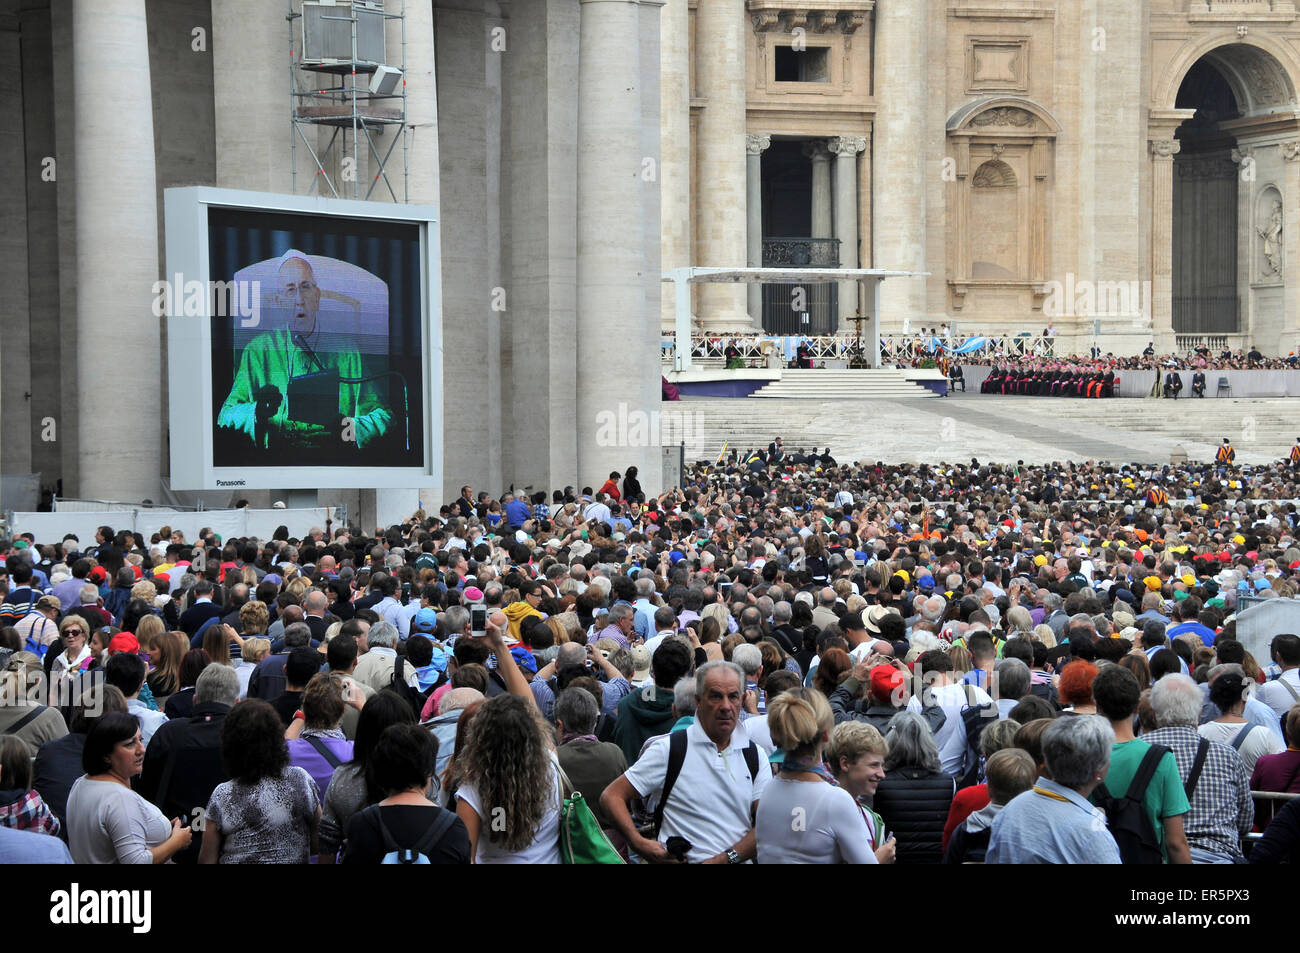 Le pape François lors d'une audience papale en face de la Basilique Saint Pierre, Rome, Italie Banque D'Images